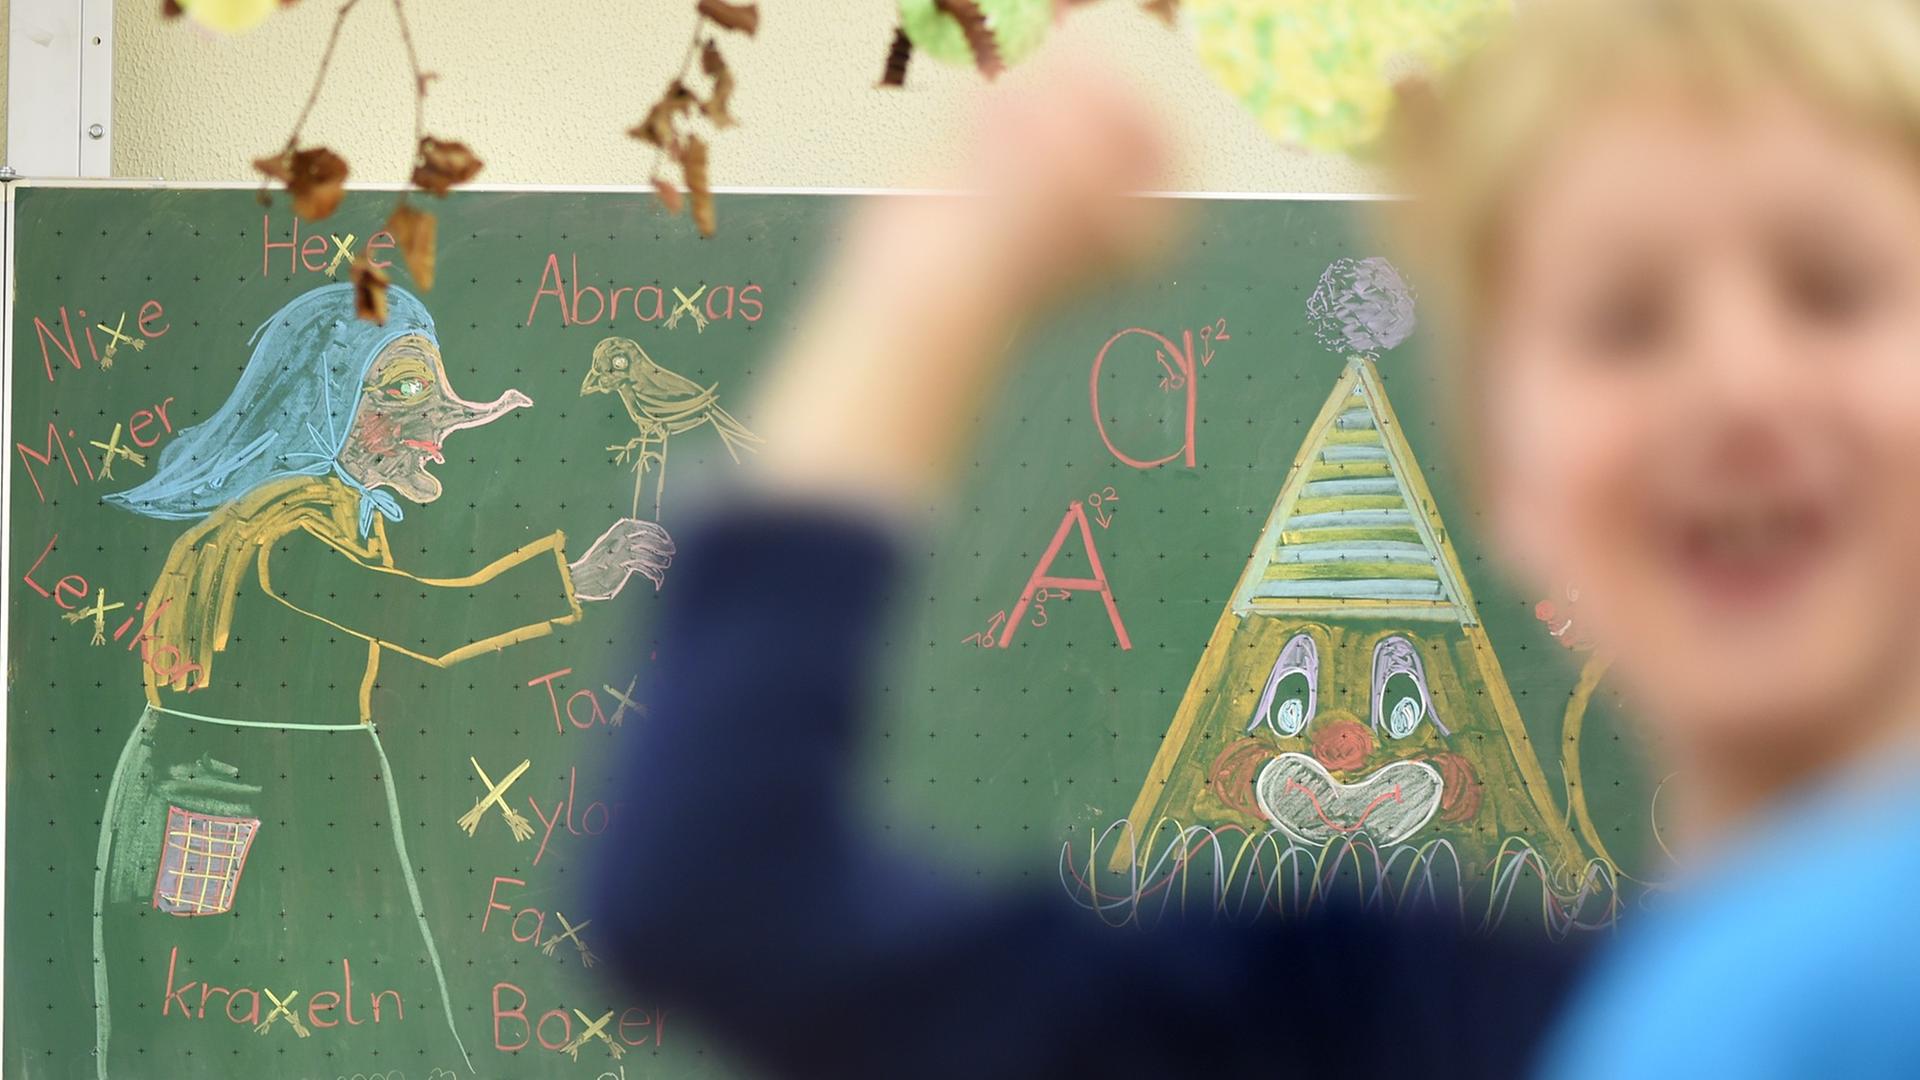 Ein Junge wirft in einem Klassenzimmer mit einem Gegenstand. Im Hintergrund ist ein Tafelbild mit einer Hexe.